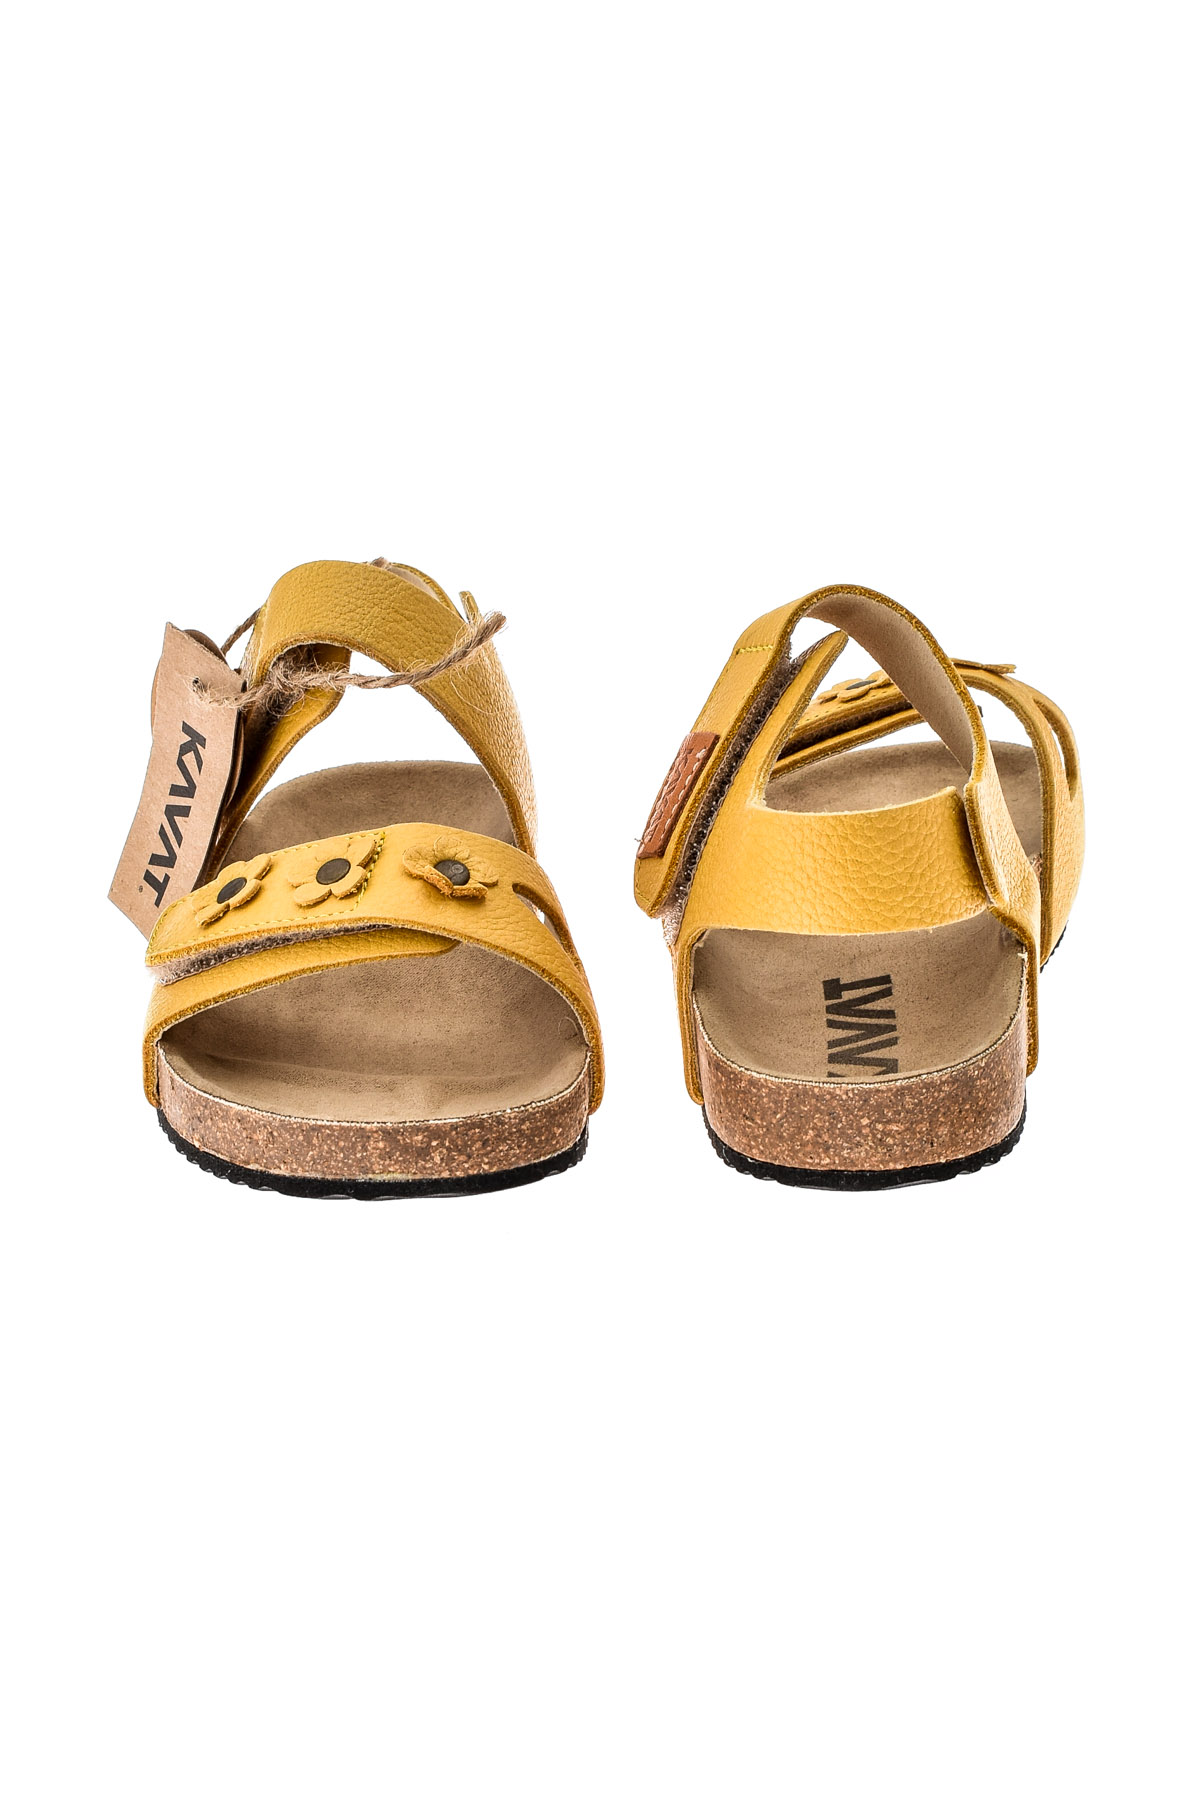 Sandals for girls - KAVAT - 2